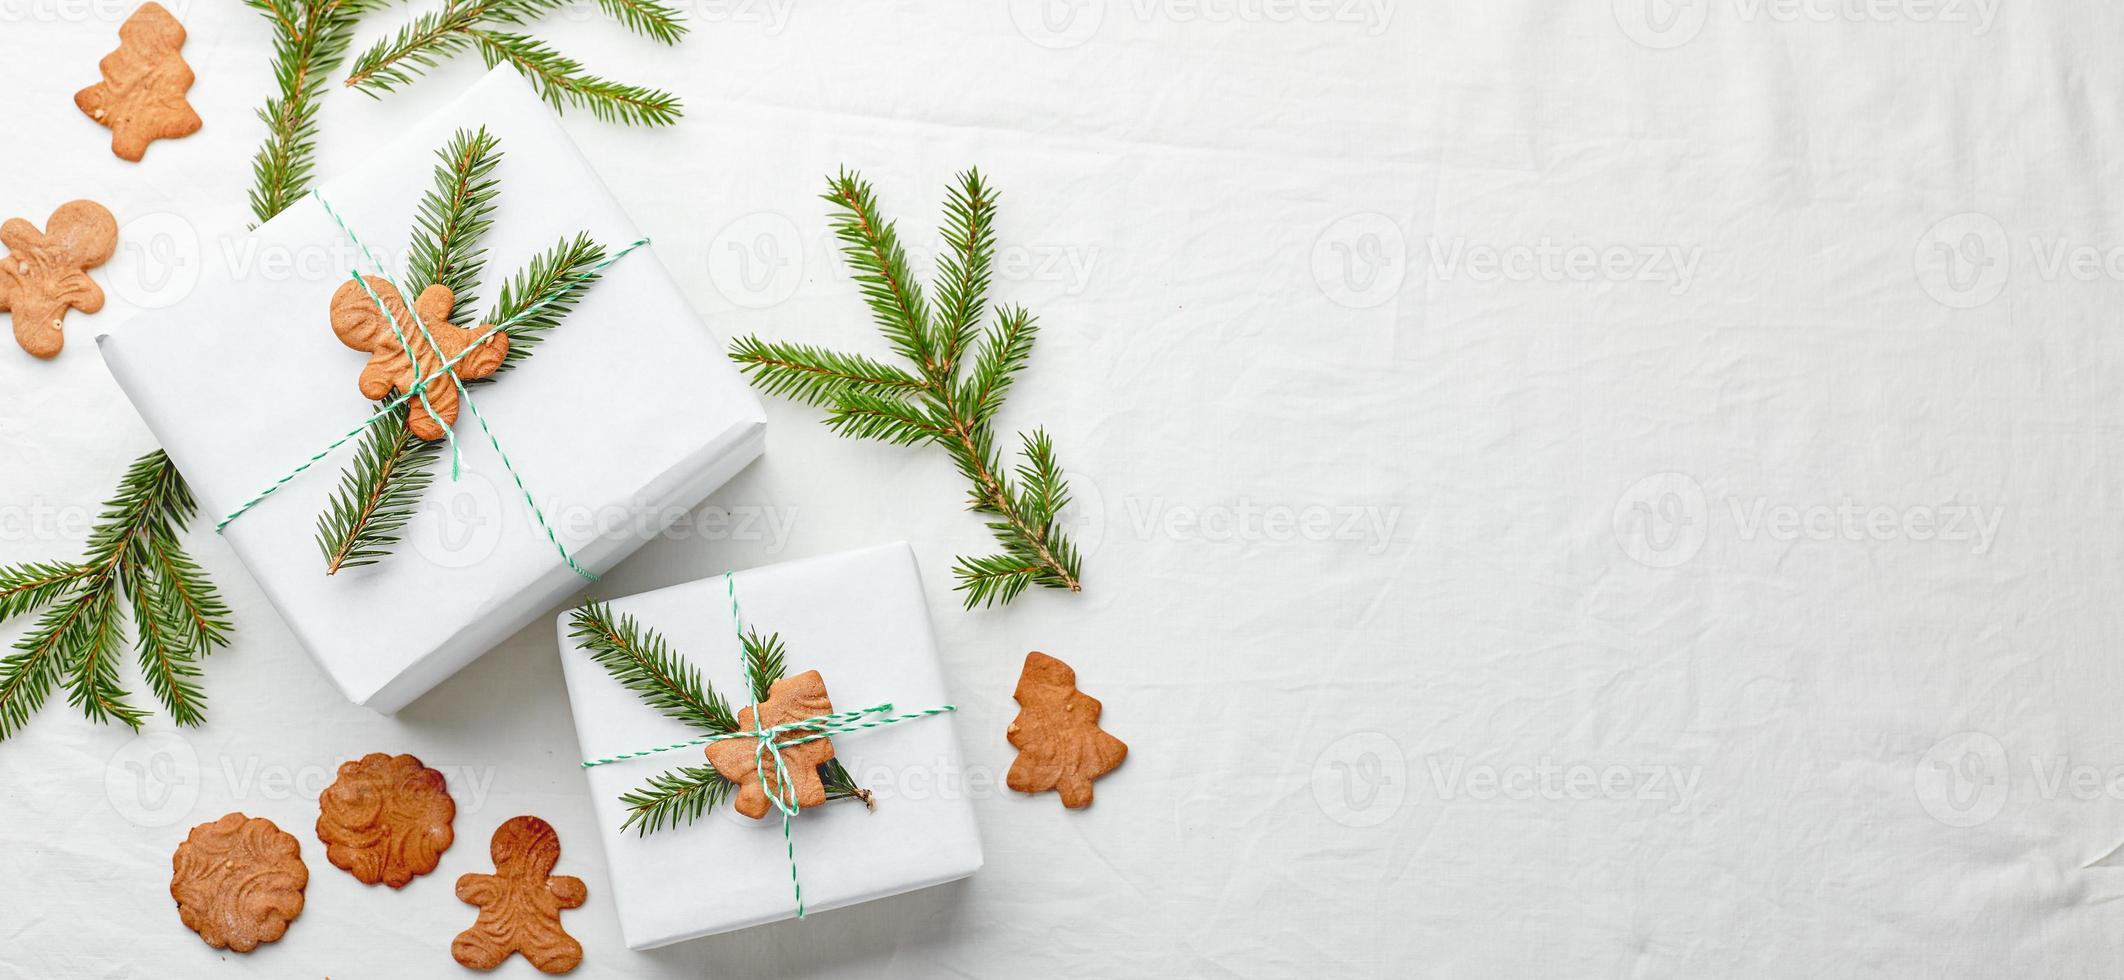 presentes de natal embrulhados em papel branco e decorados com raminhos de abeto e biscoitos de gengibre foto